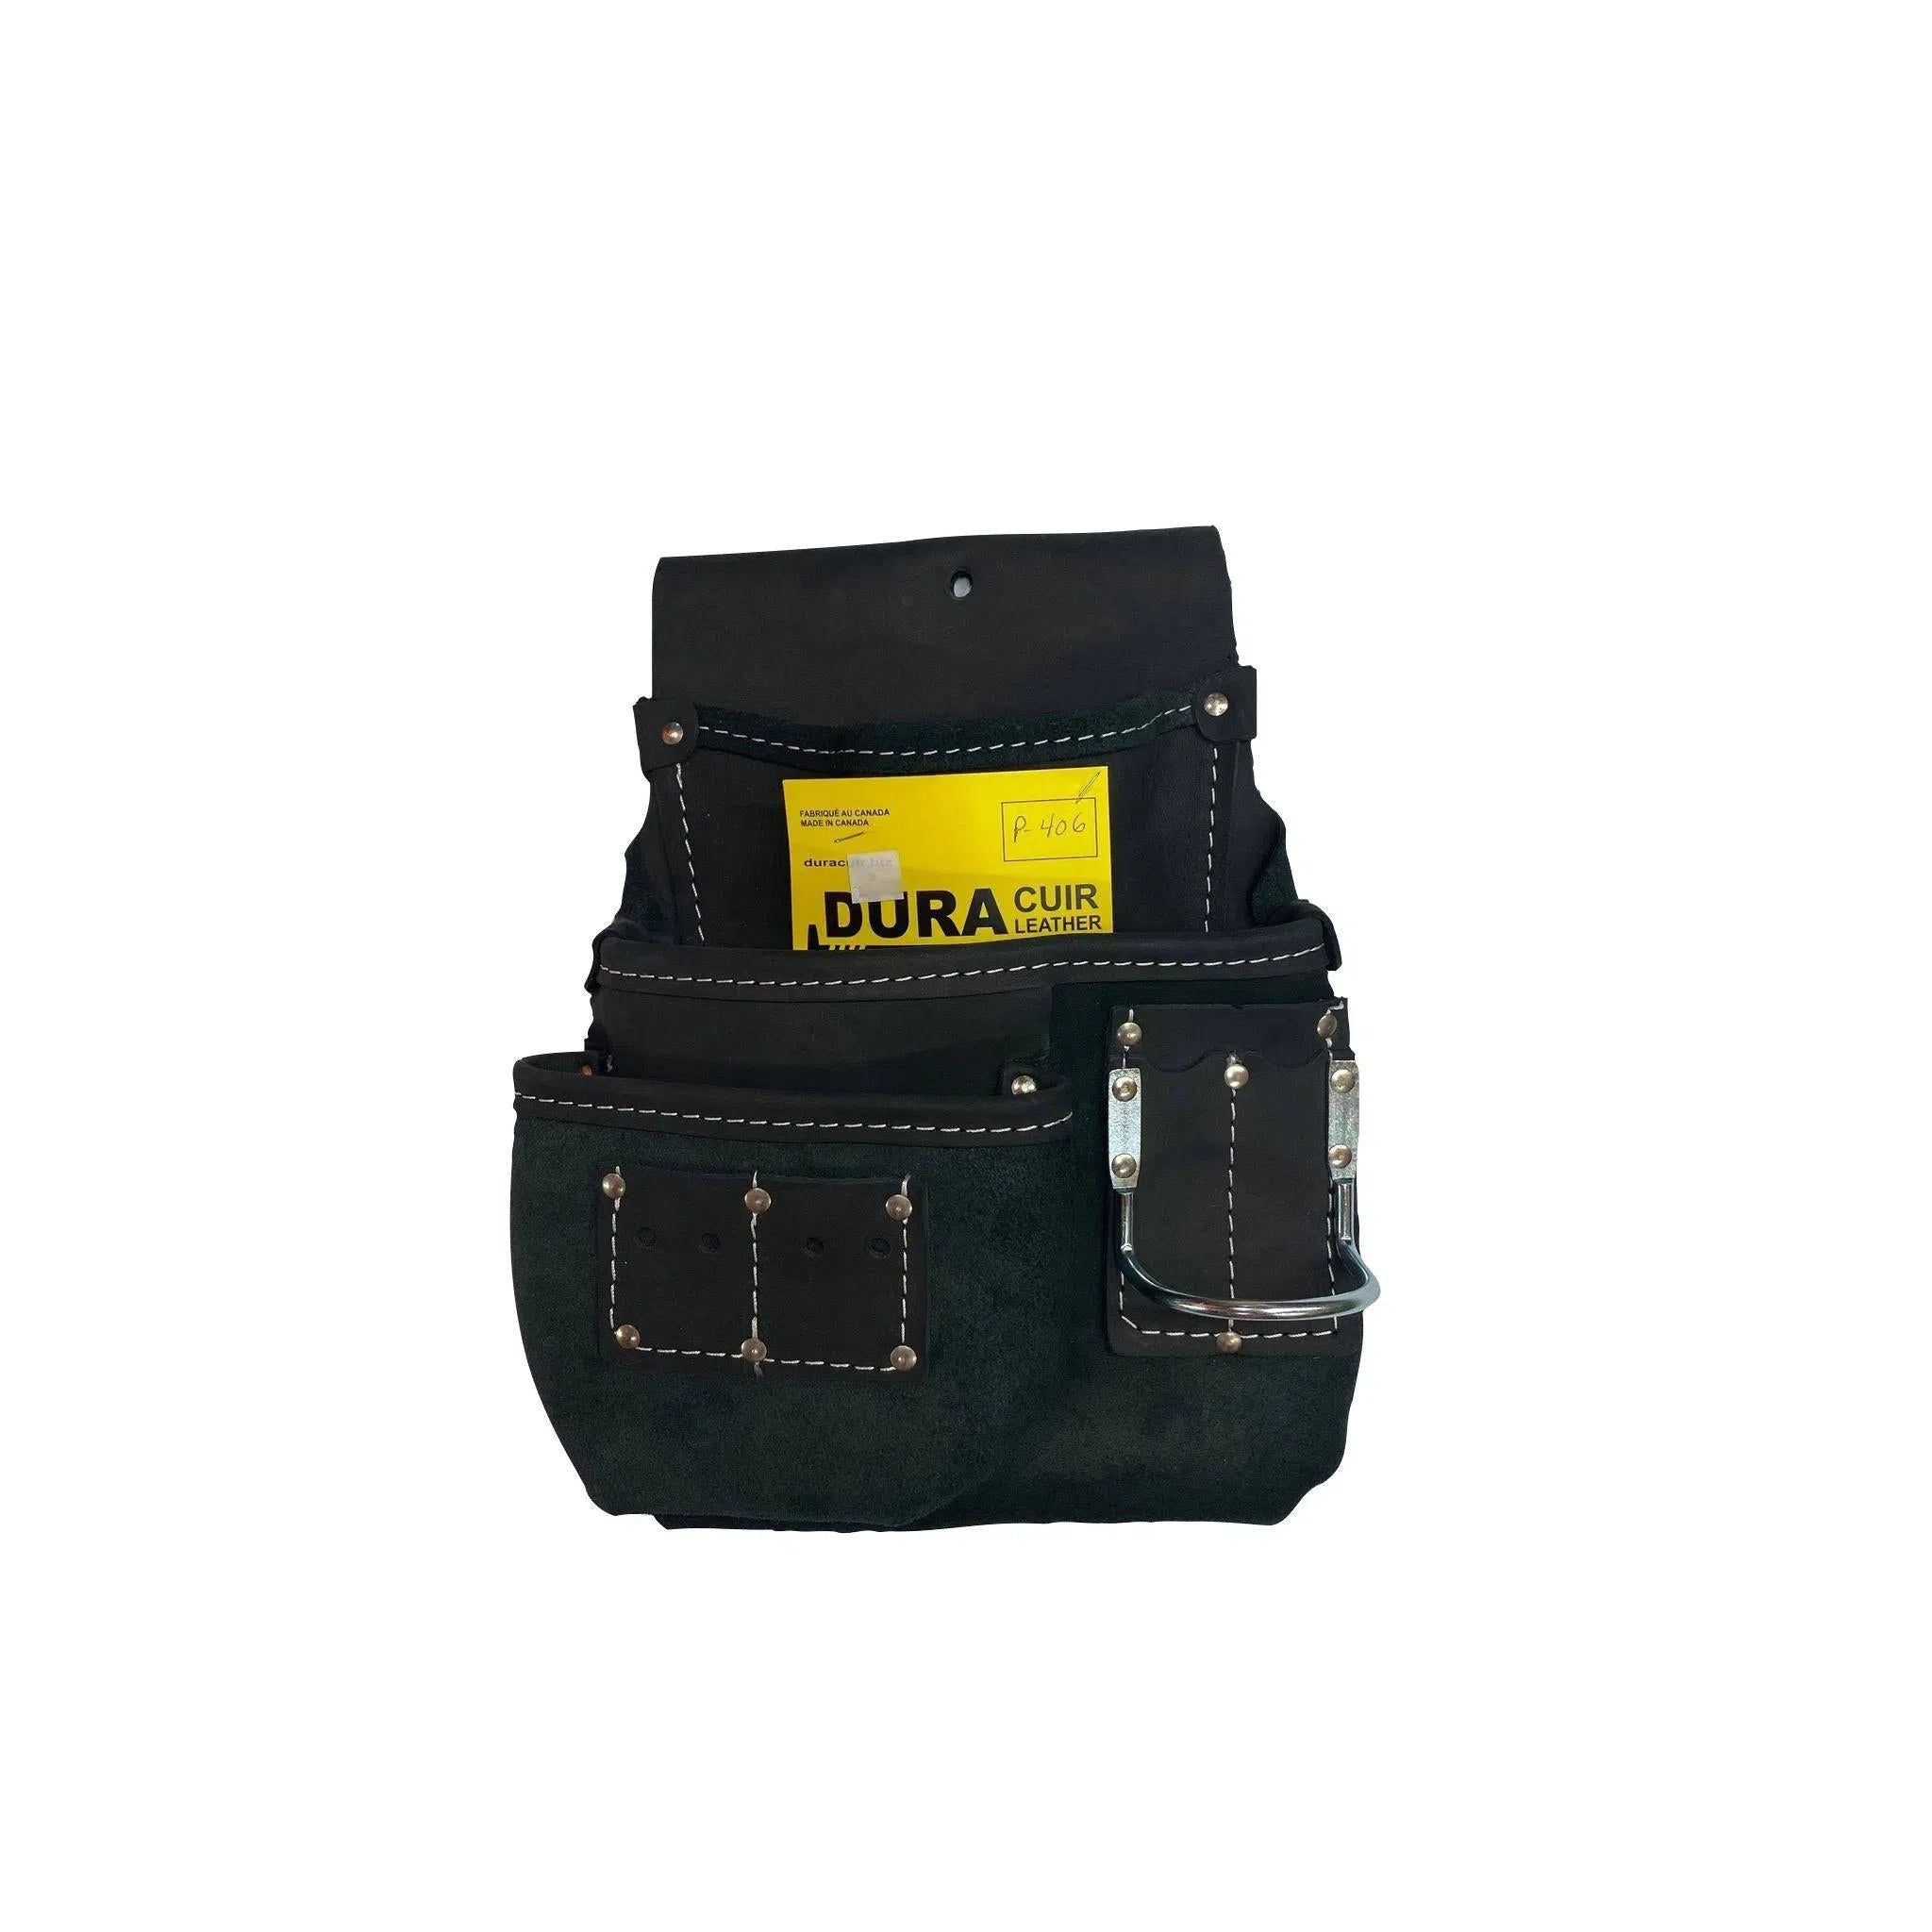 Duracuir P-406 tool bag